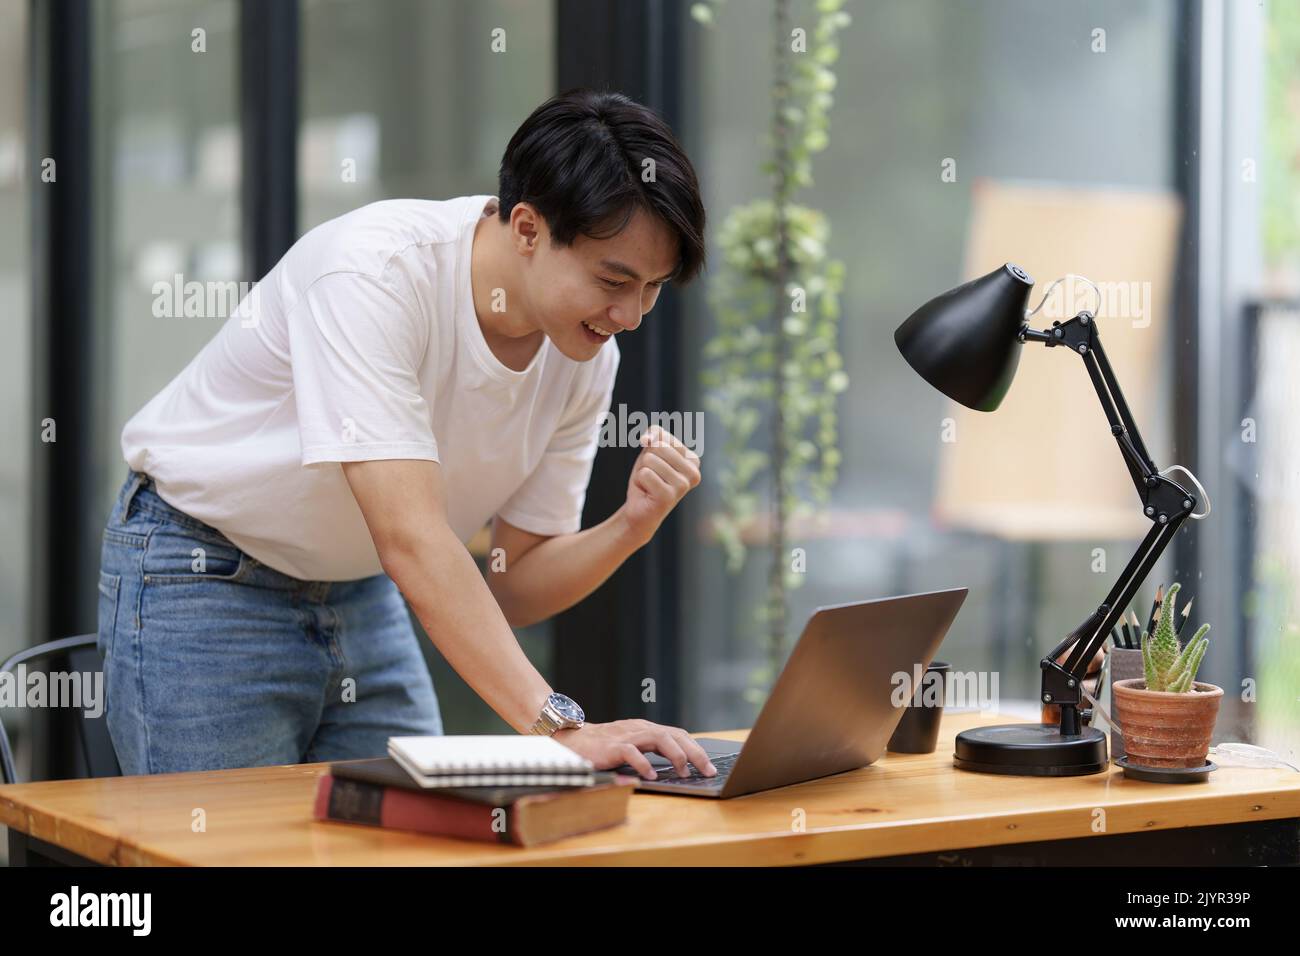 Un homme asiatique heureux utilisant un ordinateur portable tout en ayant une bonne nouvelle de travailler au bureau Banque D'Images